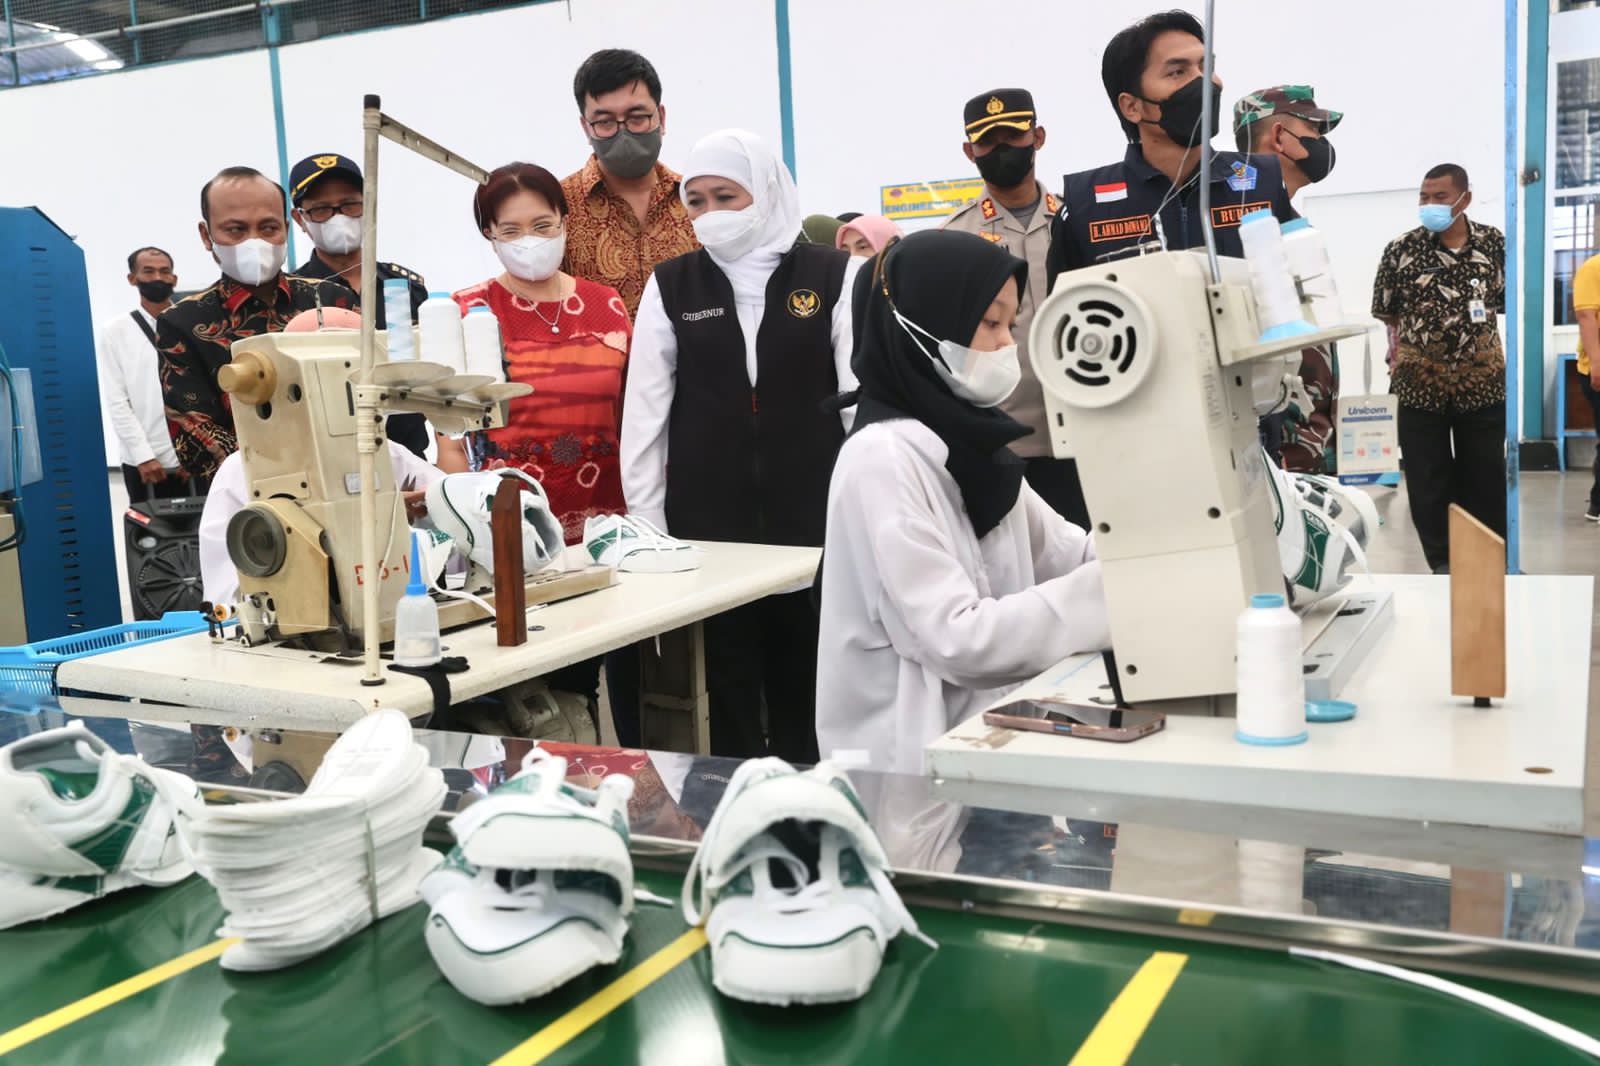 Ekspor 14.000 Lebih Pasang Sepatu ke China, Gubernur: Ini Good News dari Madiun